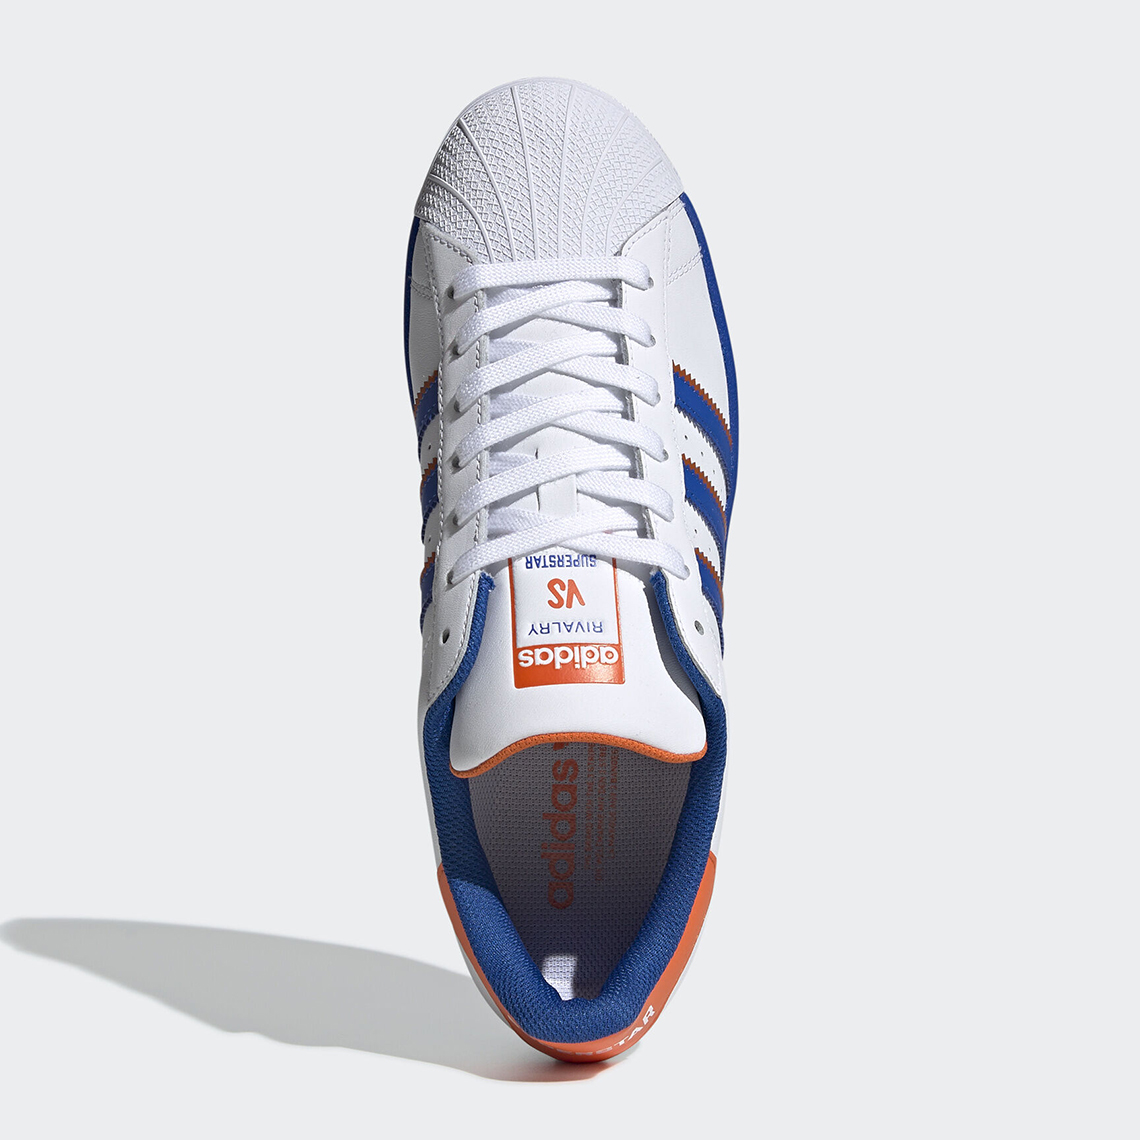 adidas superstar blue orange